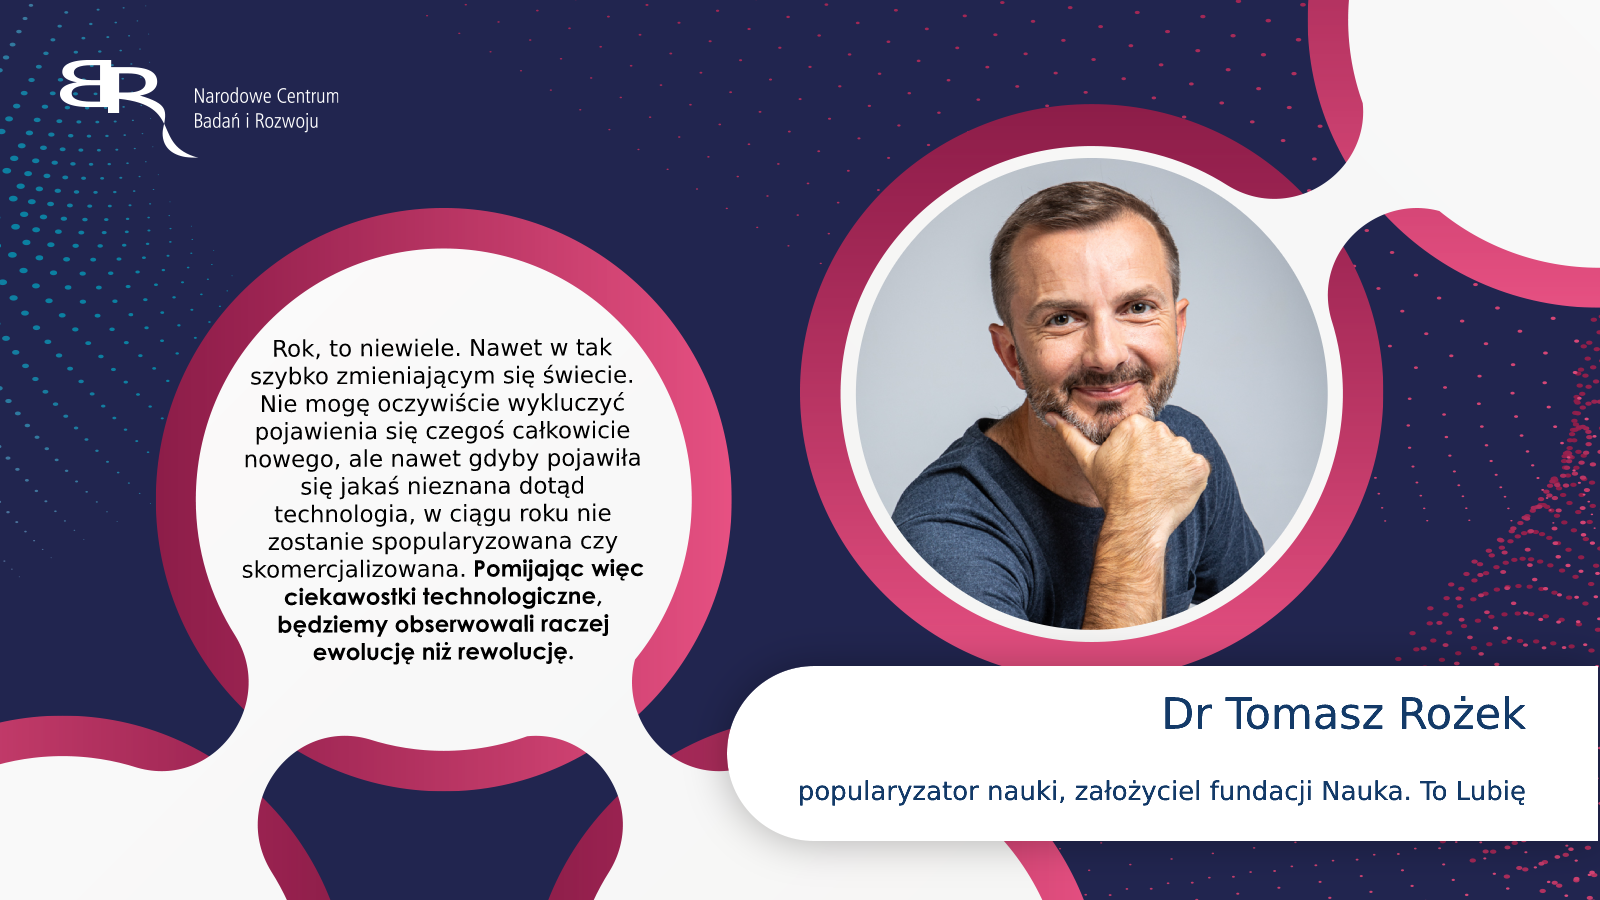 Dr Tomasz Rożek – fizyk, dziennikarz, popularyzator nauki, założyciel fundacji Nauka. To Lubię